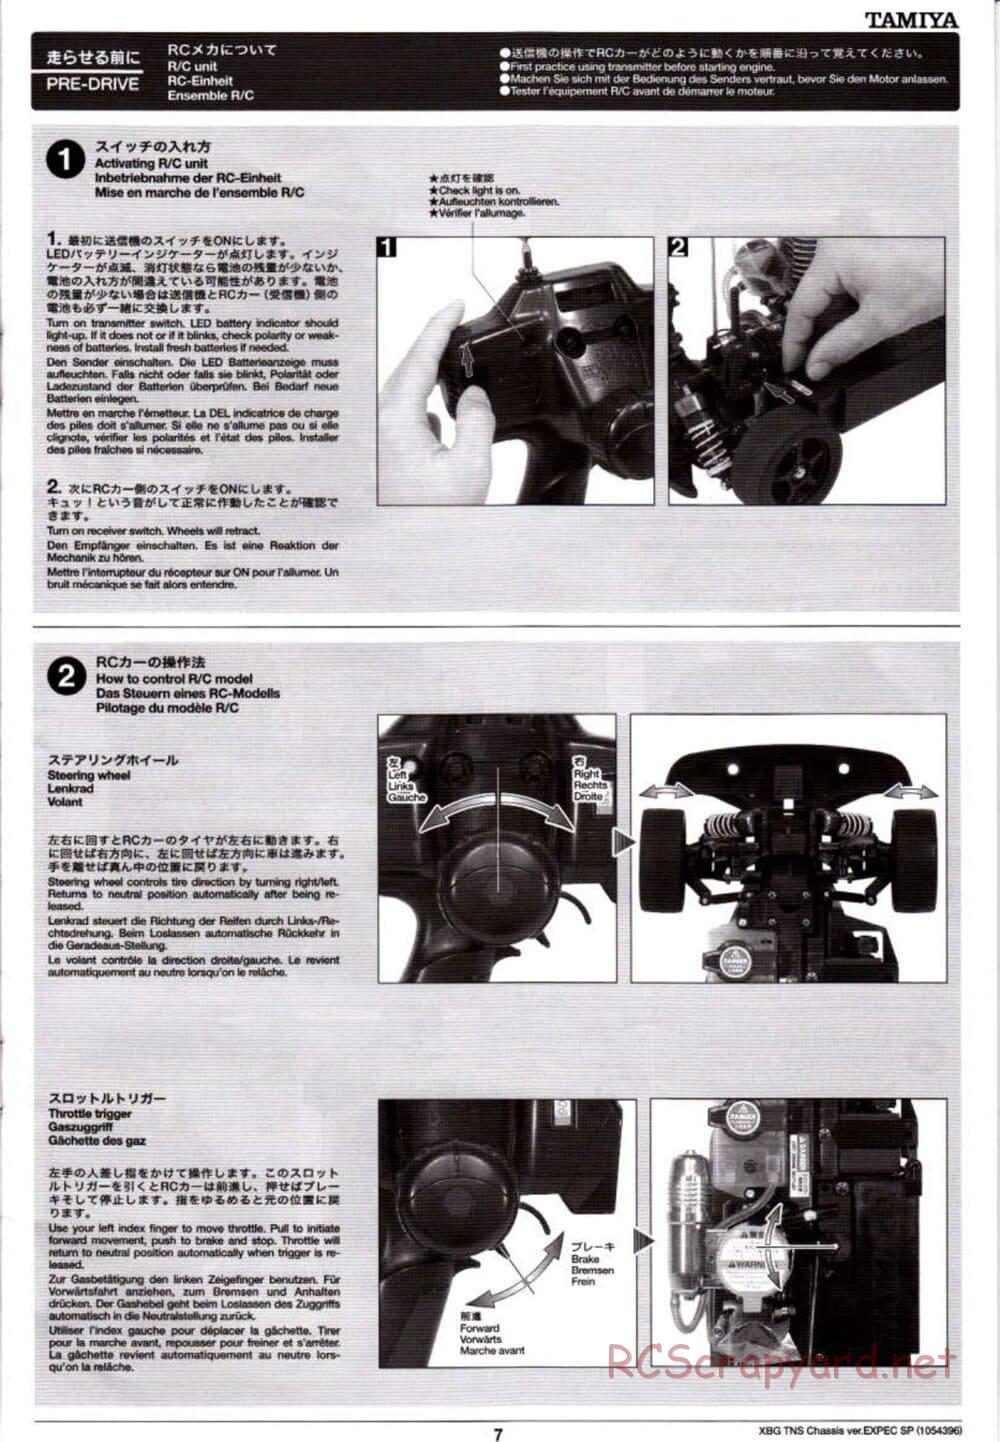 Tamiya - TNS Chassis - Manual - Page 7